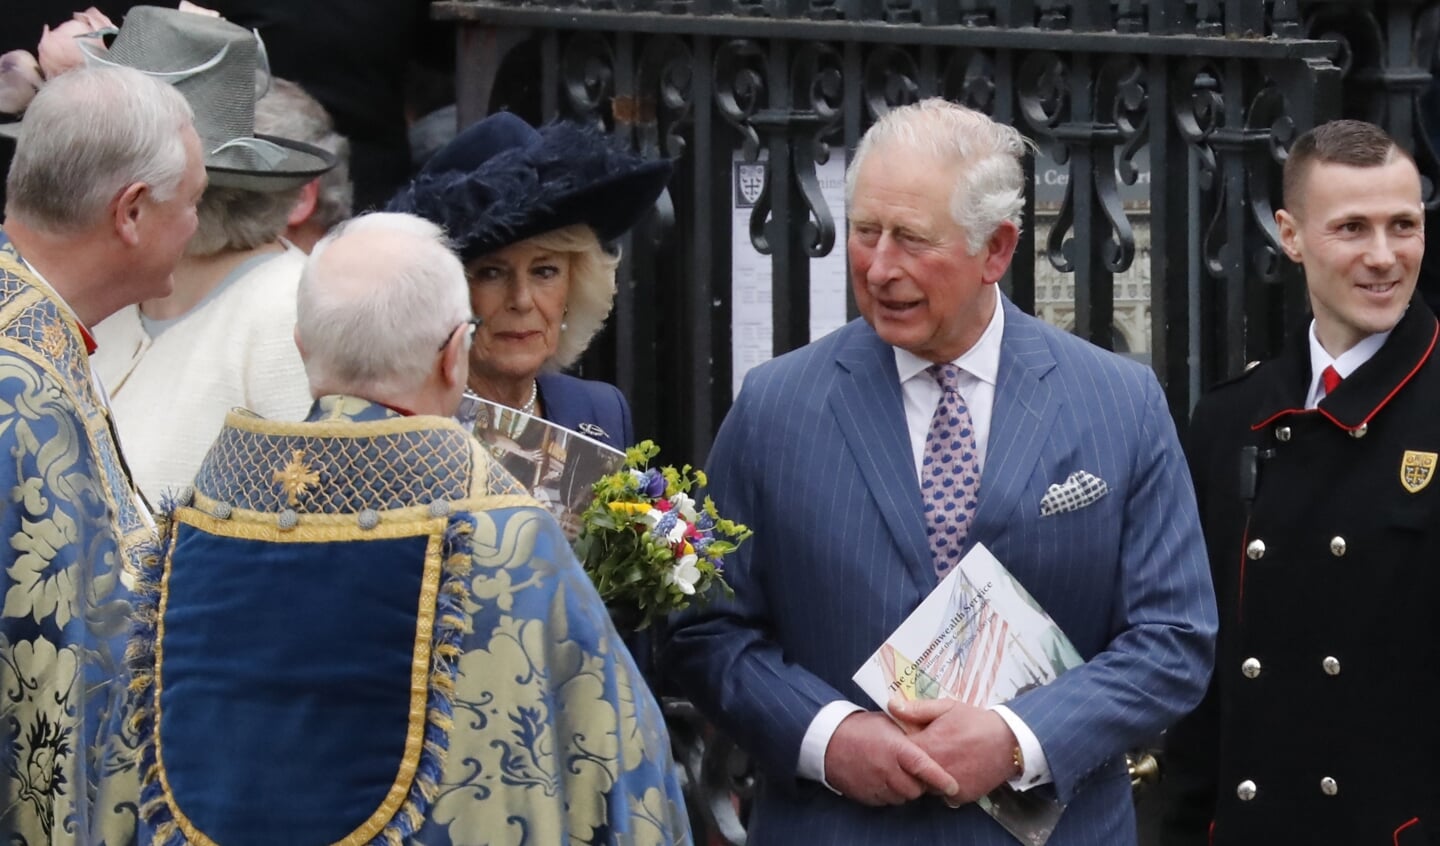 Prins Charles en zijn vrouw prinses Camilla verlaten de jaarlijkse Commonwealth-viering in Westminster Abbey, de grootste interreligieuze viering van het Verenigd Koninkrijk. Het goddelijke laat zich volgens Charles in alle godsdiensten vinden. 